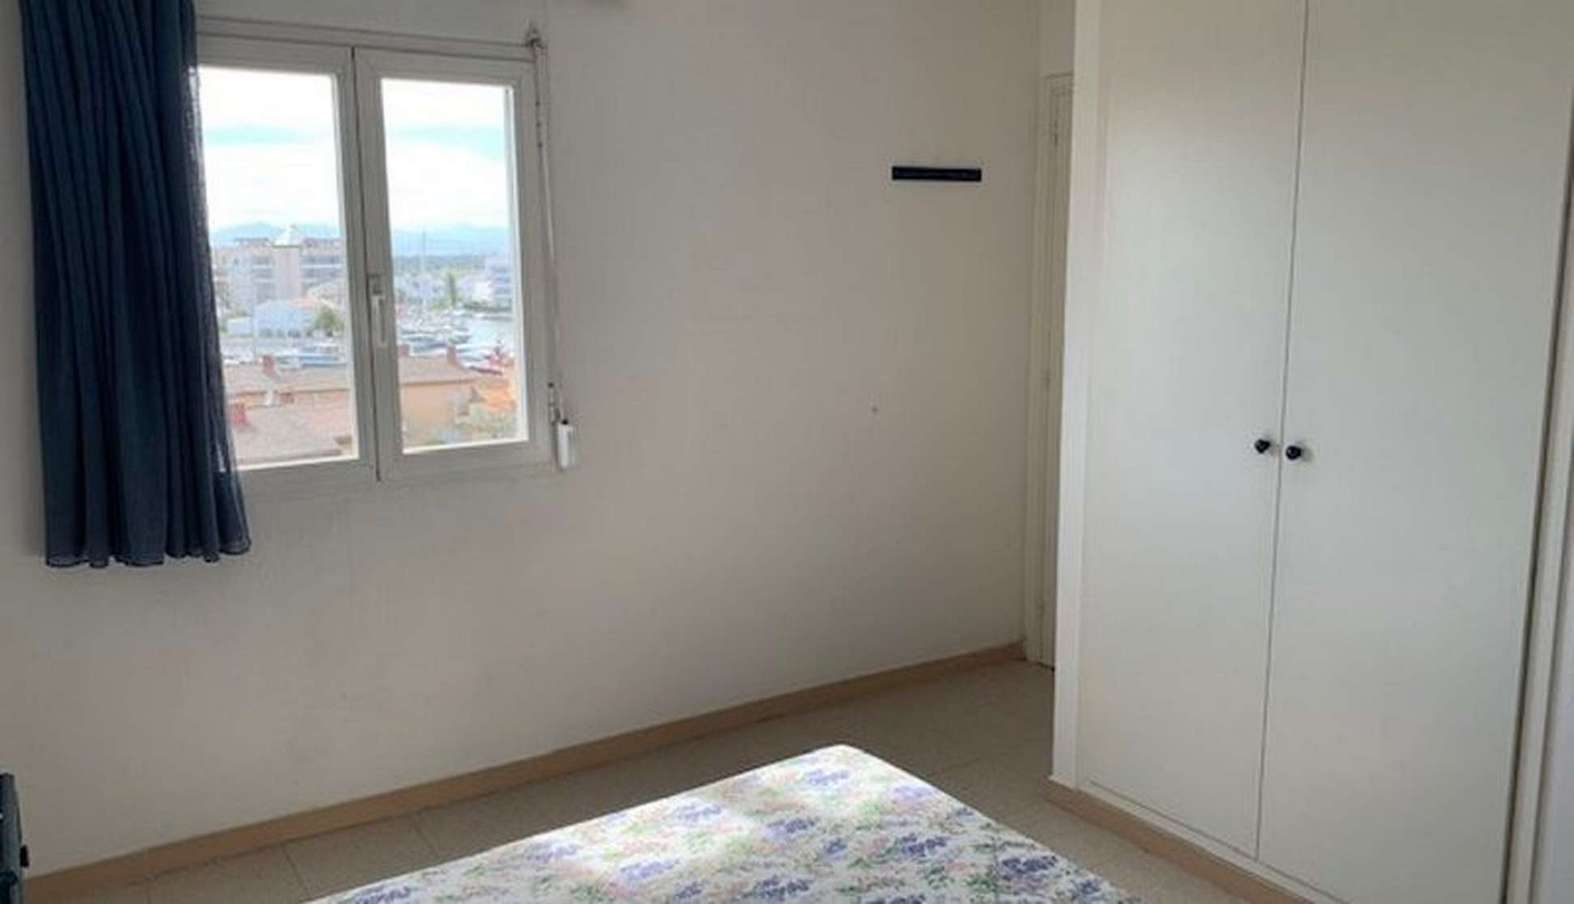 Bonic apartament de 2 dormitoris amb aparcament i piscina, en venda a Santa Margarida